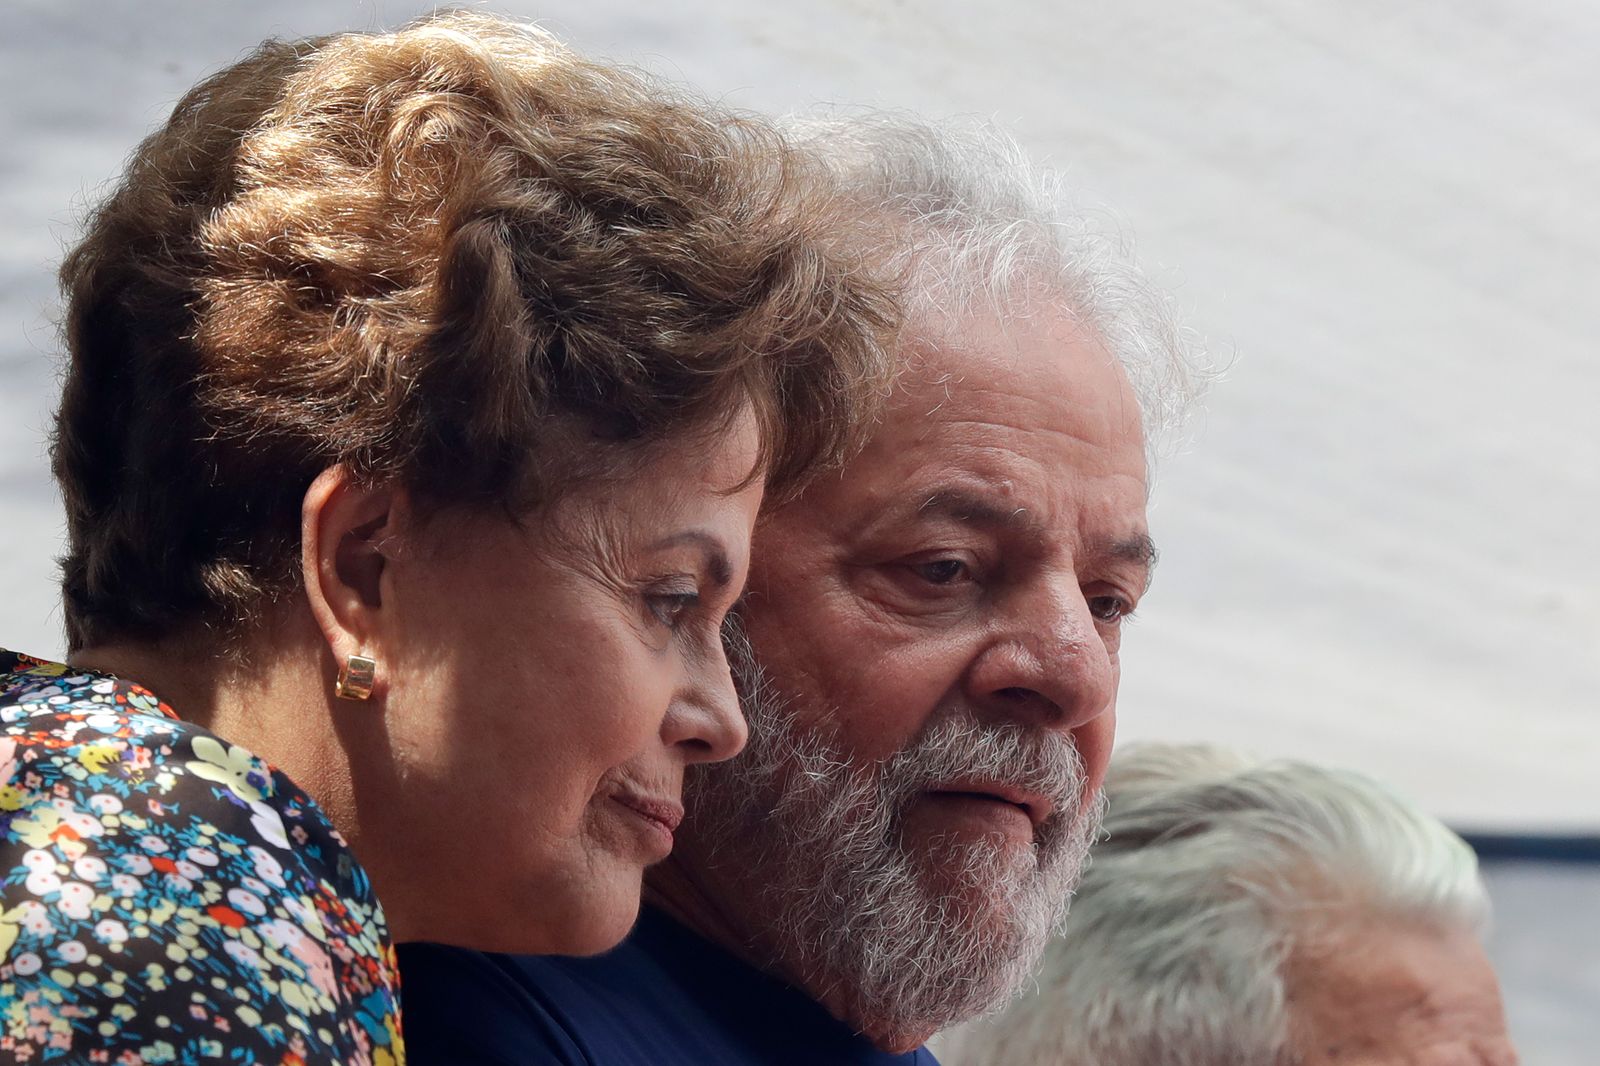 الرئيسان البرازيليان السابقان لويز إيناسيو لولا دا سيلفا وديلما روسيف أمام مقرّ نقابة عمال المعادن في ساو برناردو دو كامبو - 7 أبريل 2018 - AP